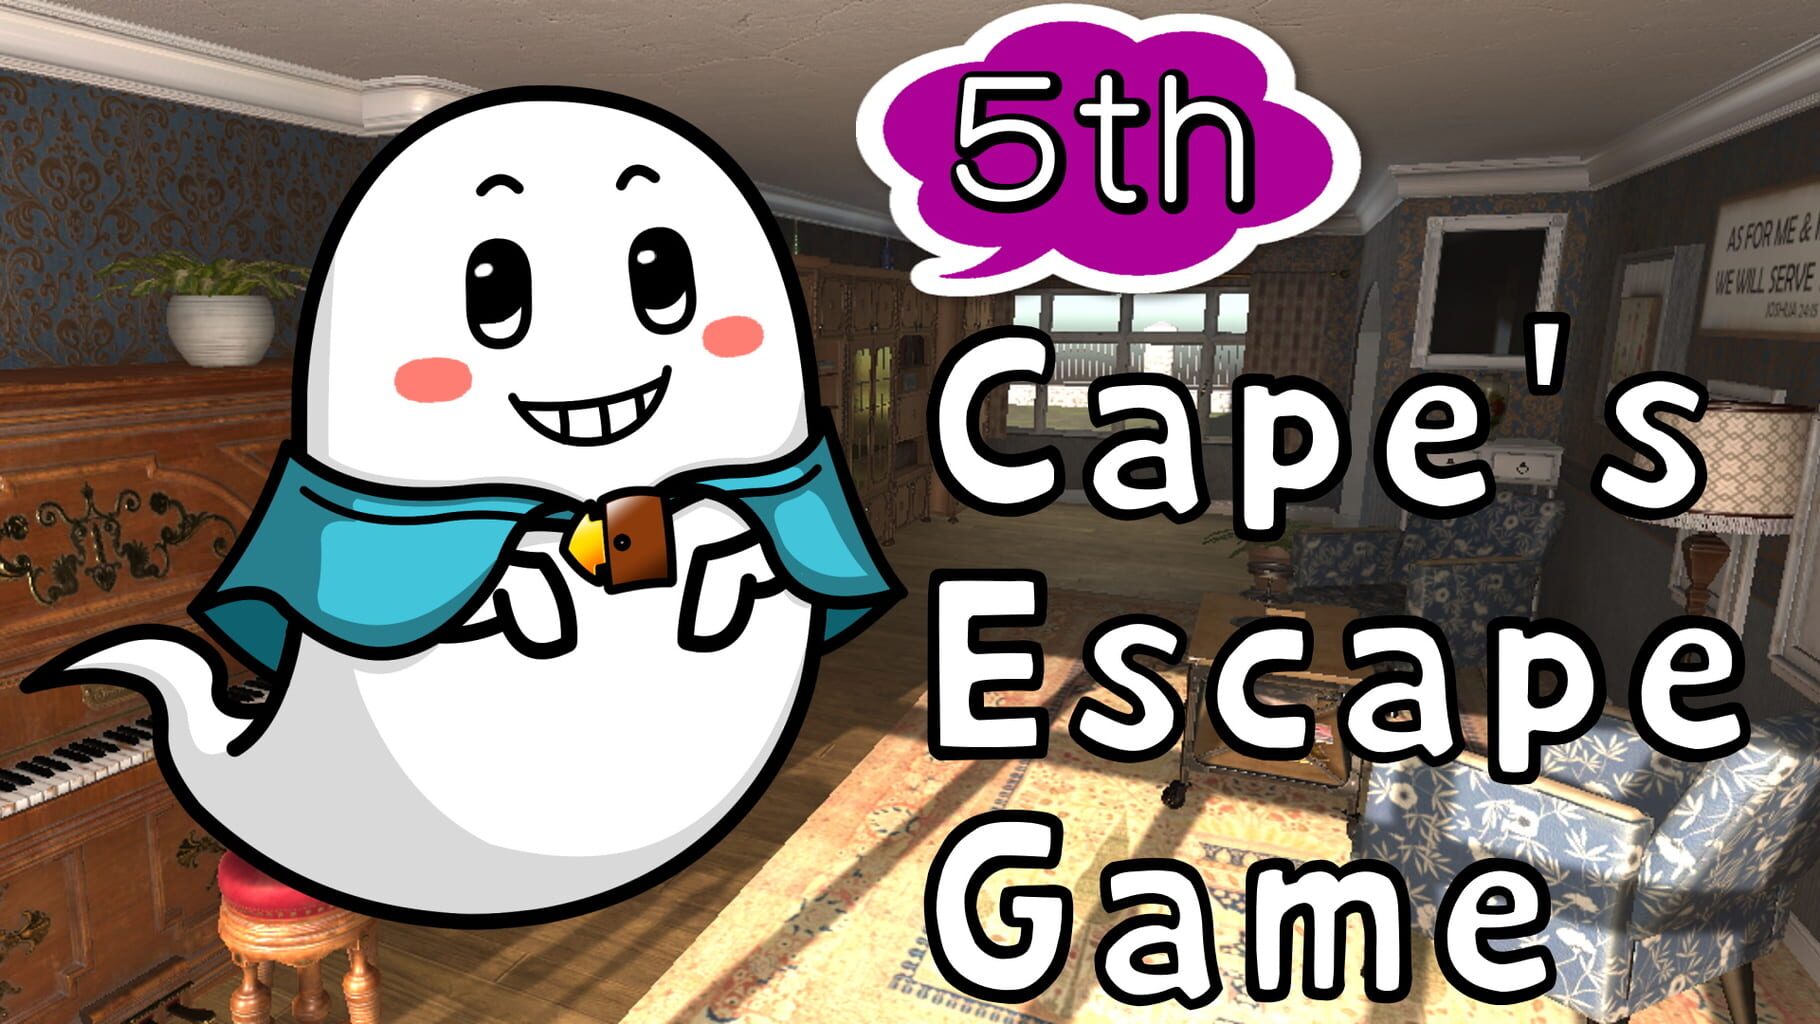 Cape's Escape Game 5th Room artwork